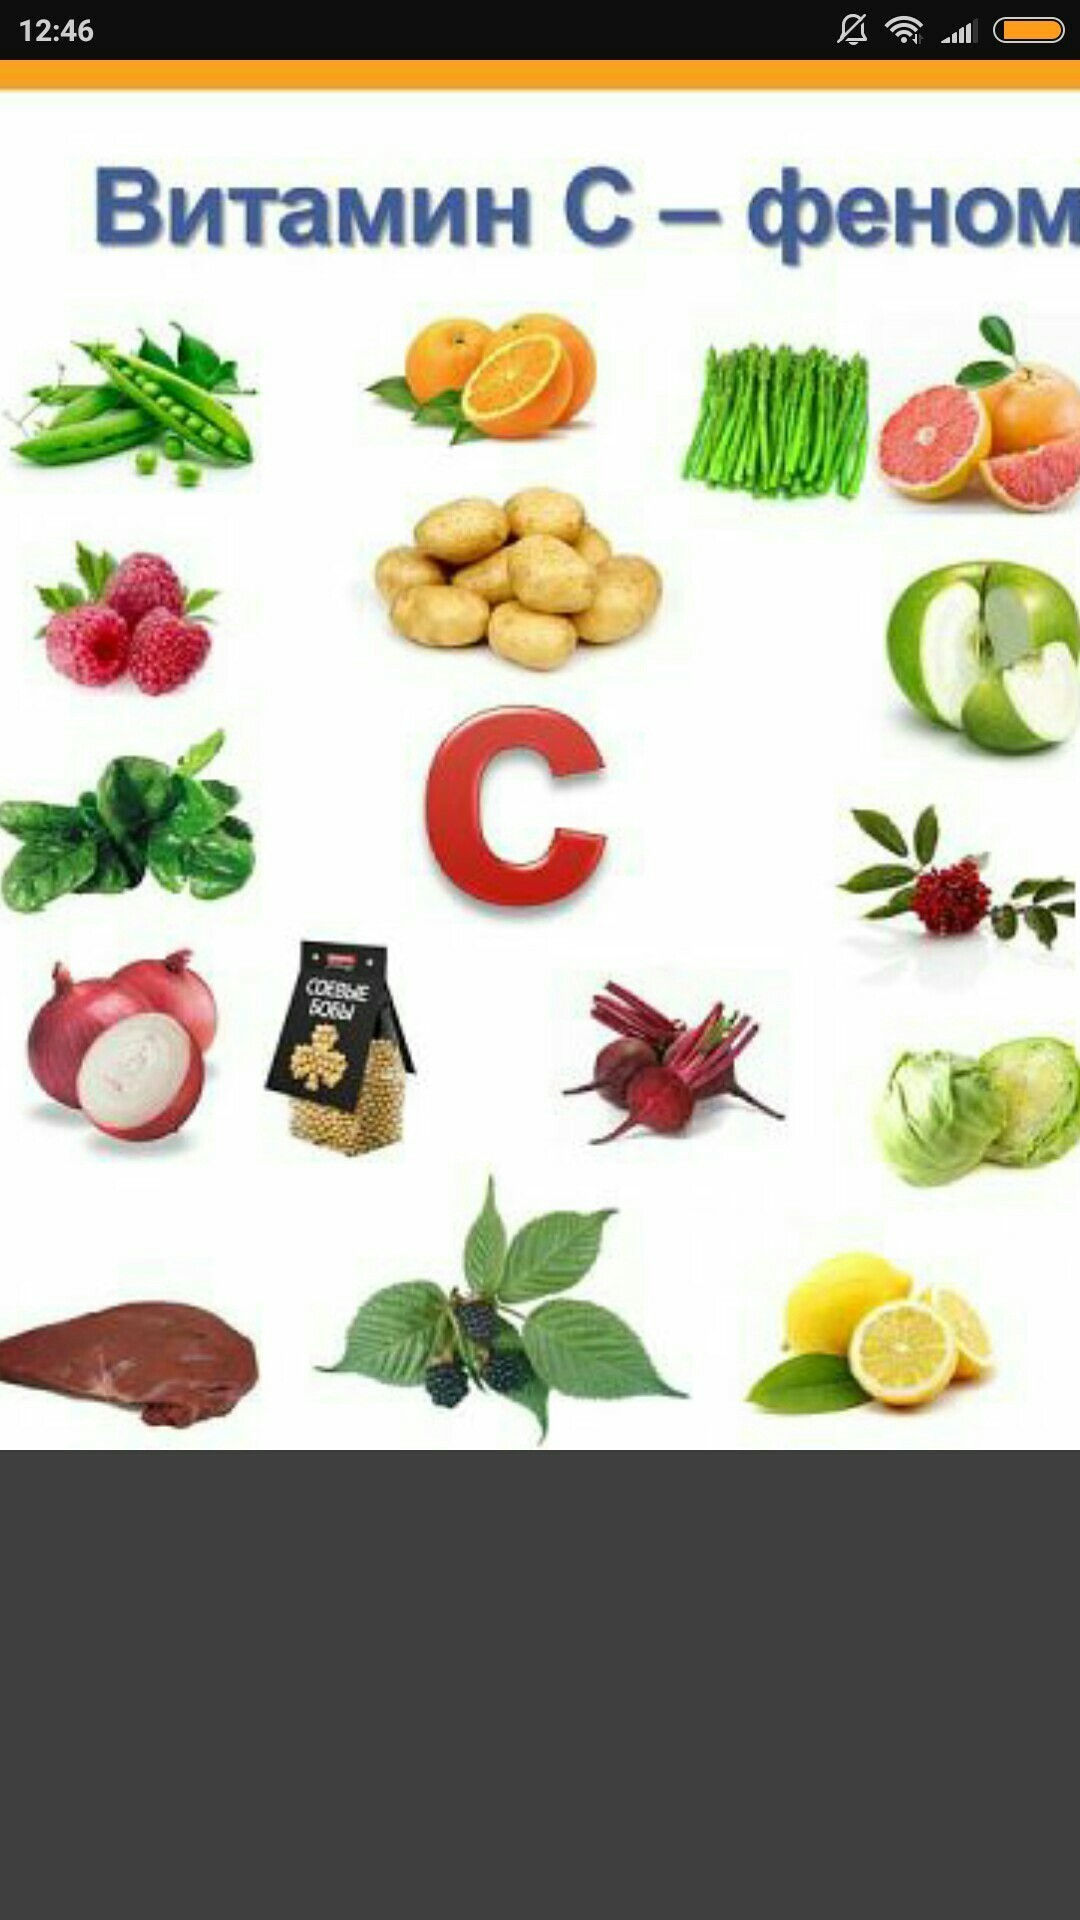 Фруктах есть витамин б. Витамины в фруктах. Что такое витамины. Овощи и фрукты с витамином c. Витамины в овощах.